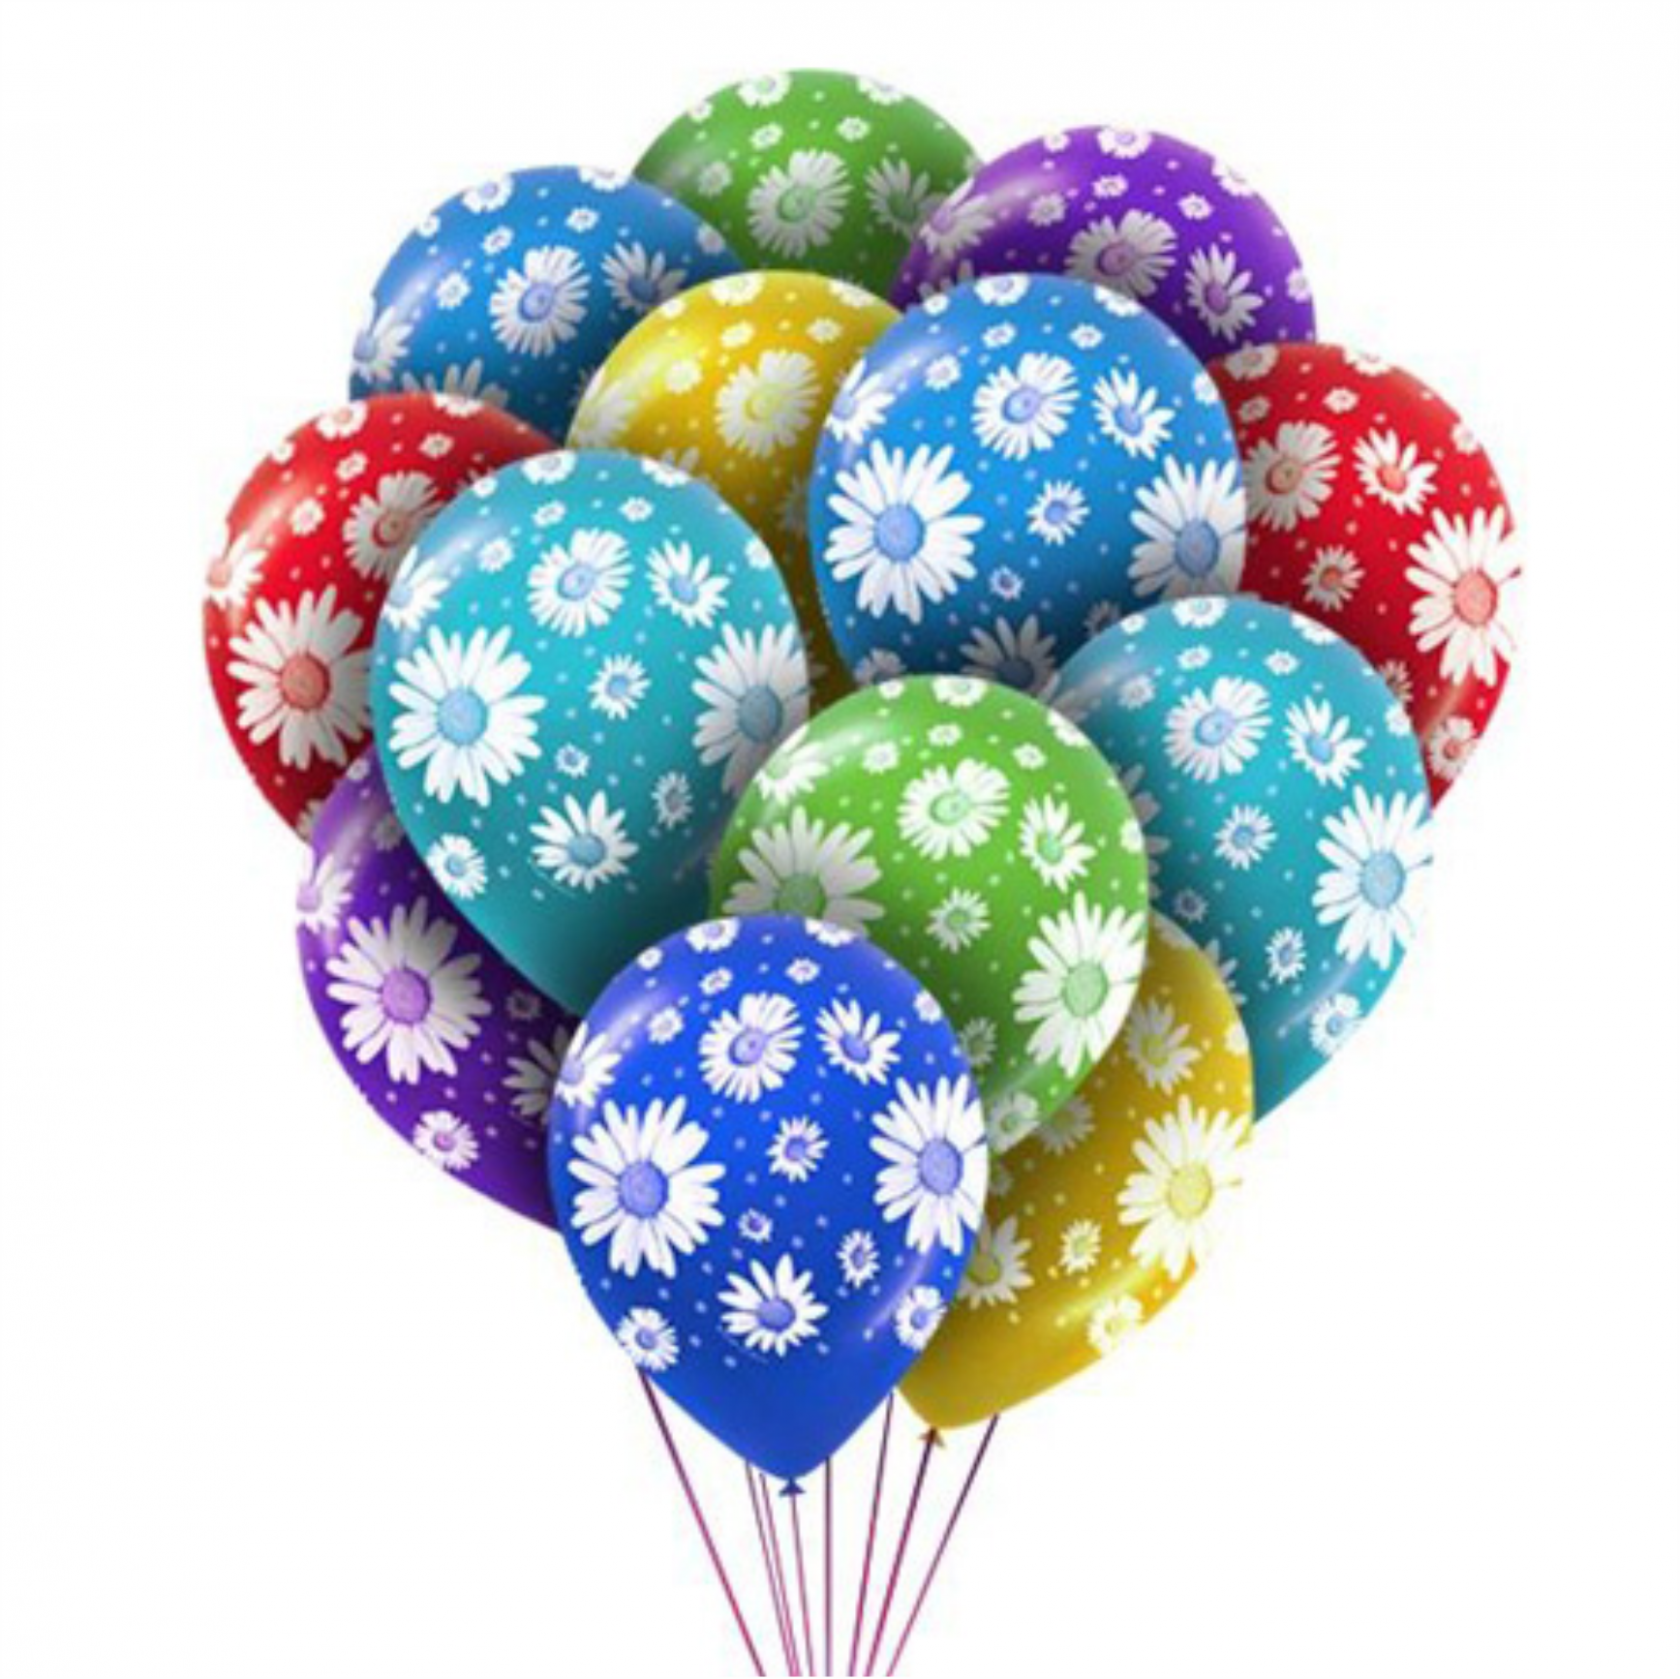 Купить воздушные шары недорого с доставкой. Цветные шары. Воздушные шары. Разноцветные шарики воздушные. Шары надувные.